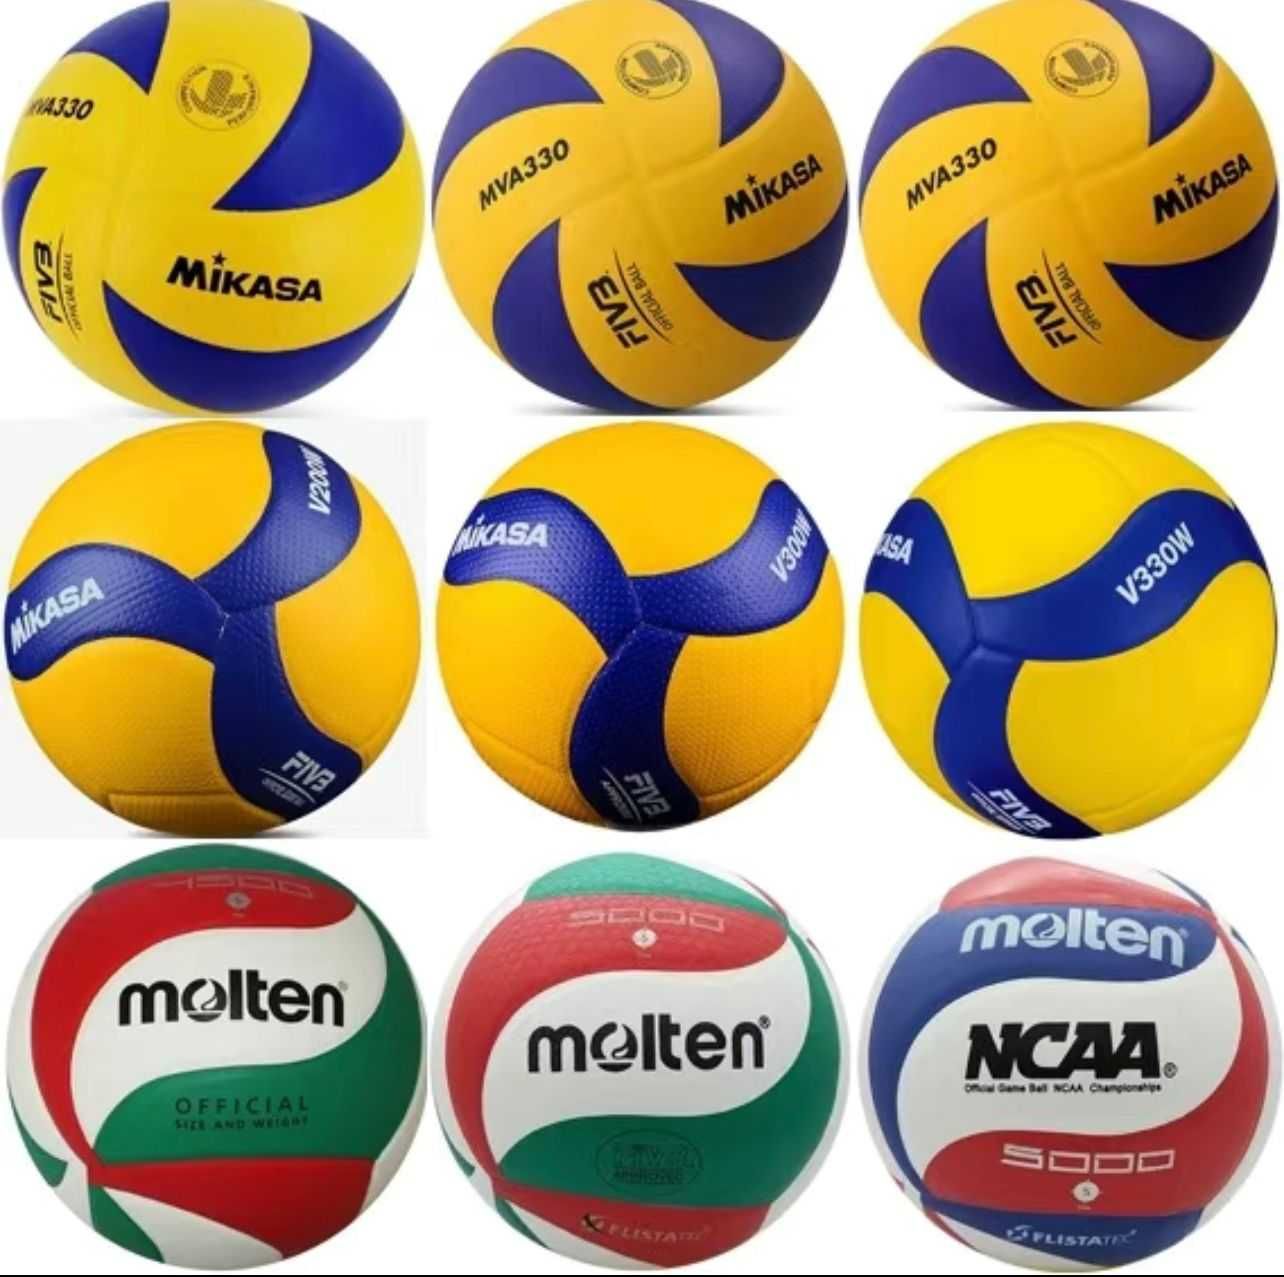 Волейбольный мяч Mikasa, Molten, Star